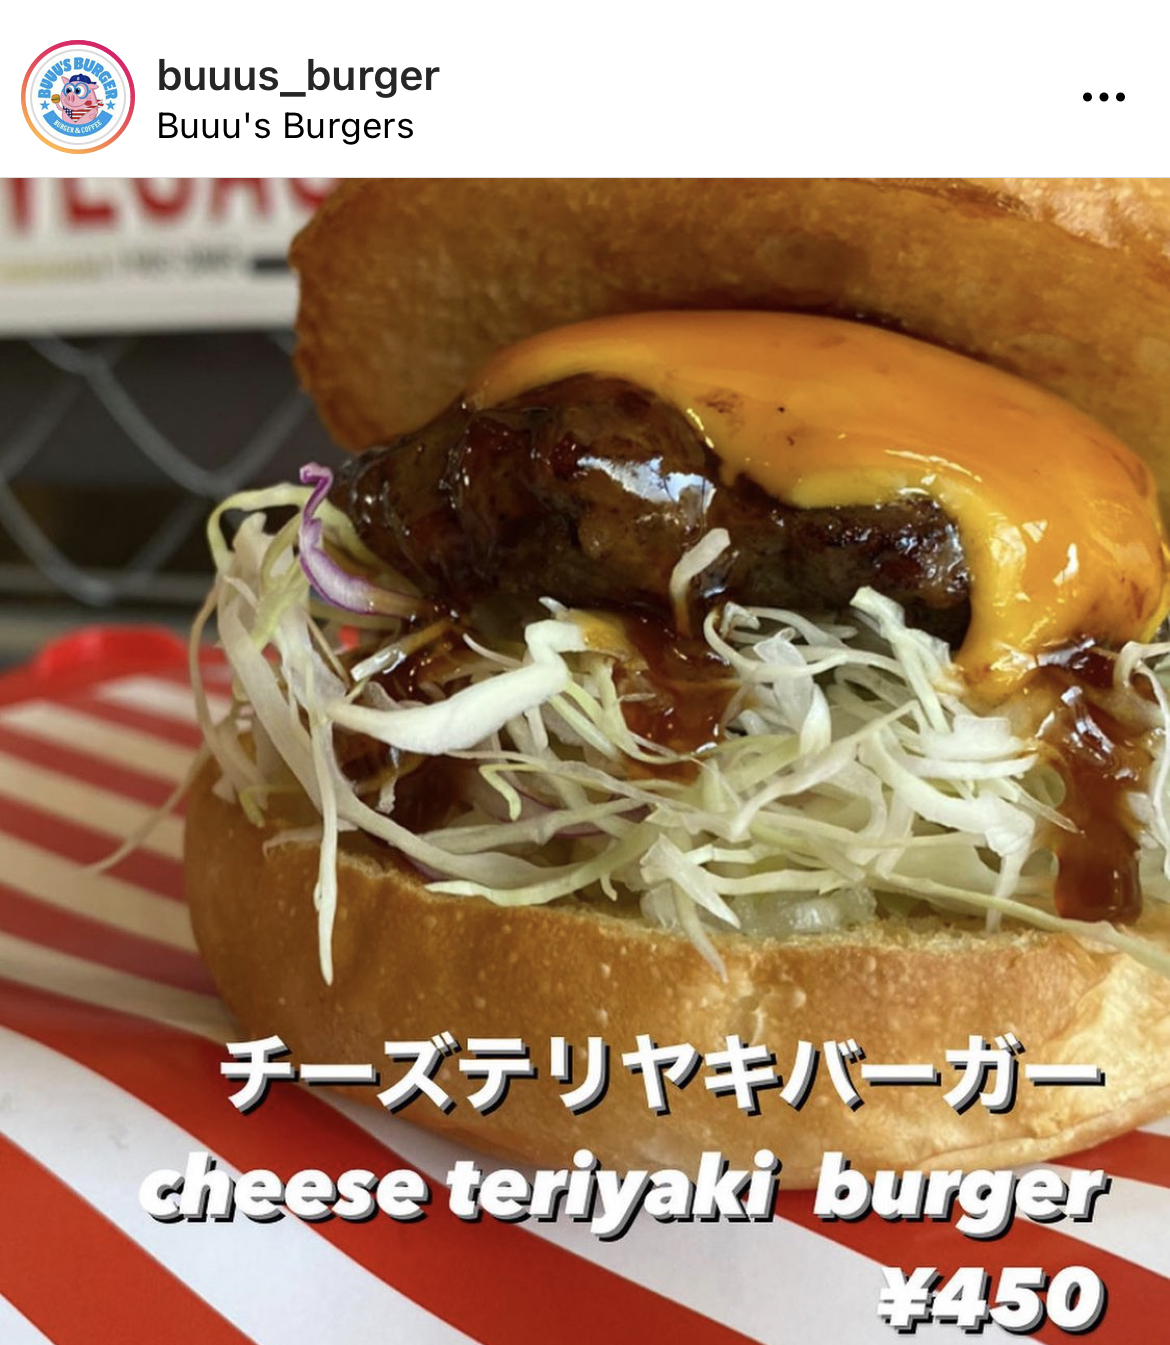 BUUU’S BURGER menu